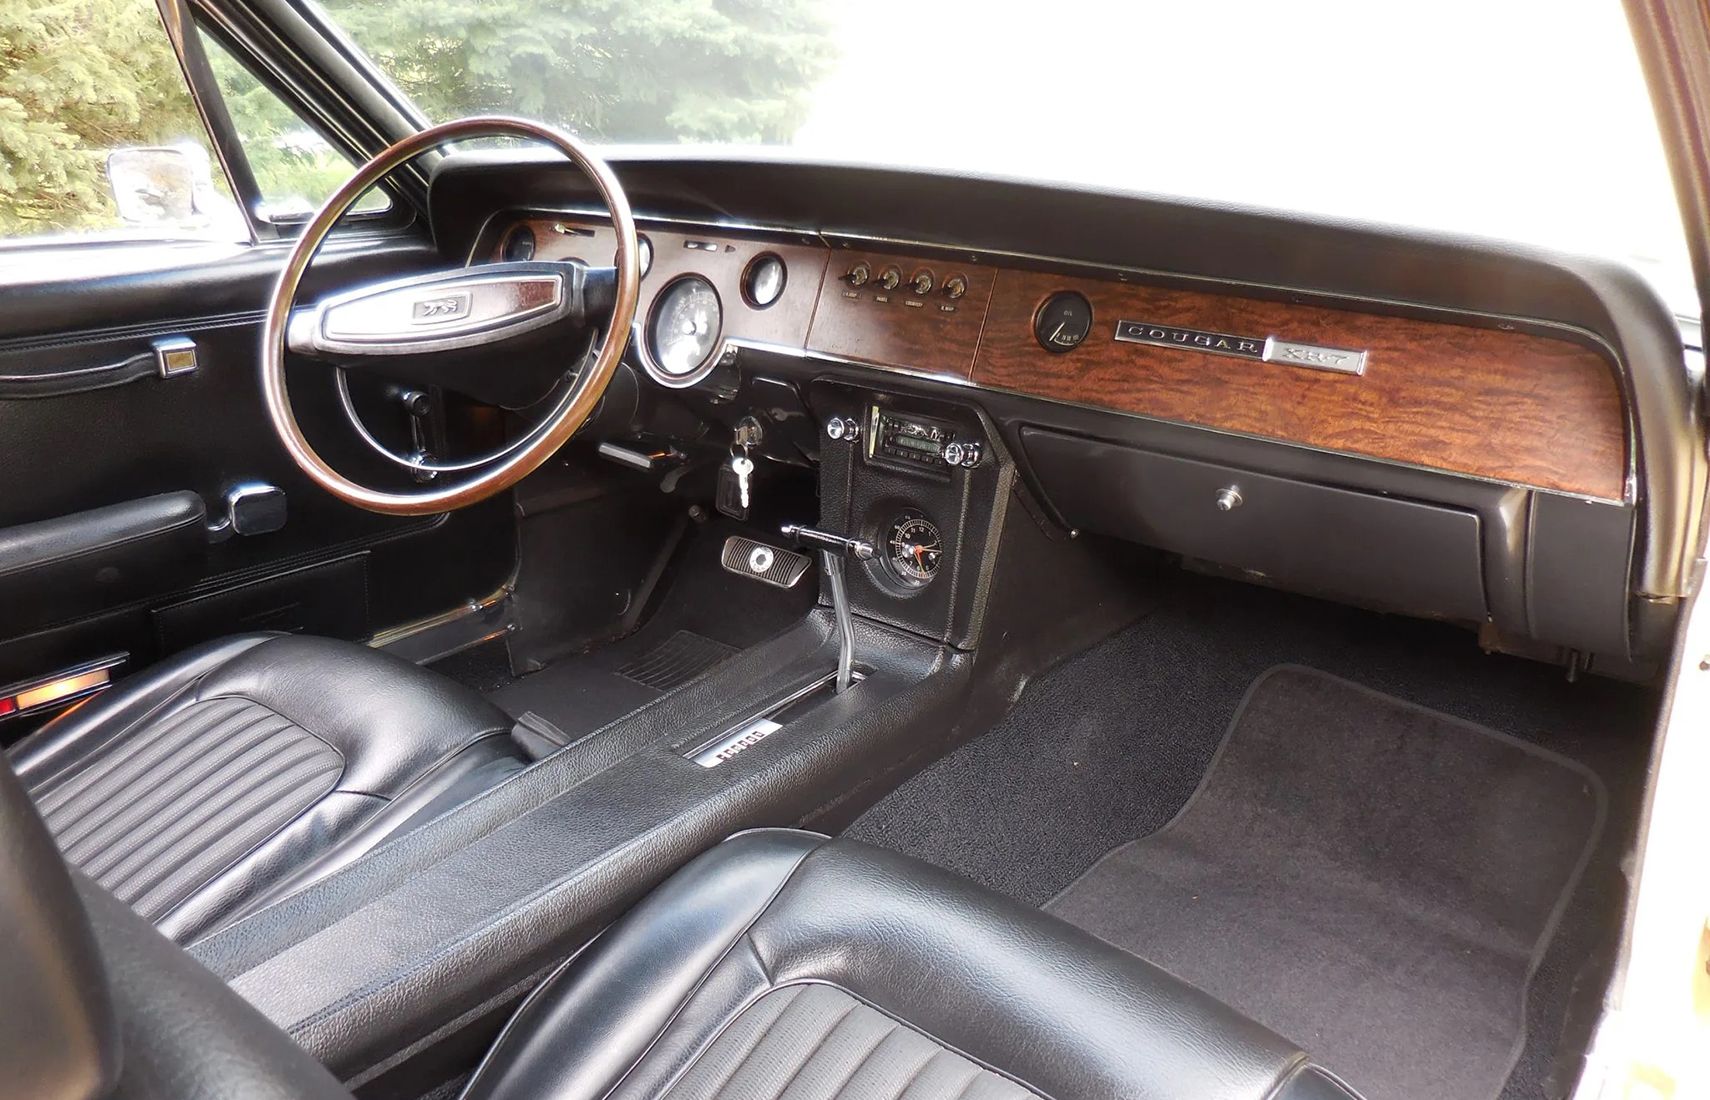 1968 Mercury Cougar XR7 Cobra Jet black vinyl interior from passenger side